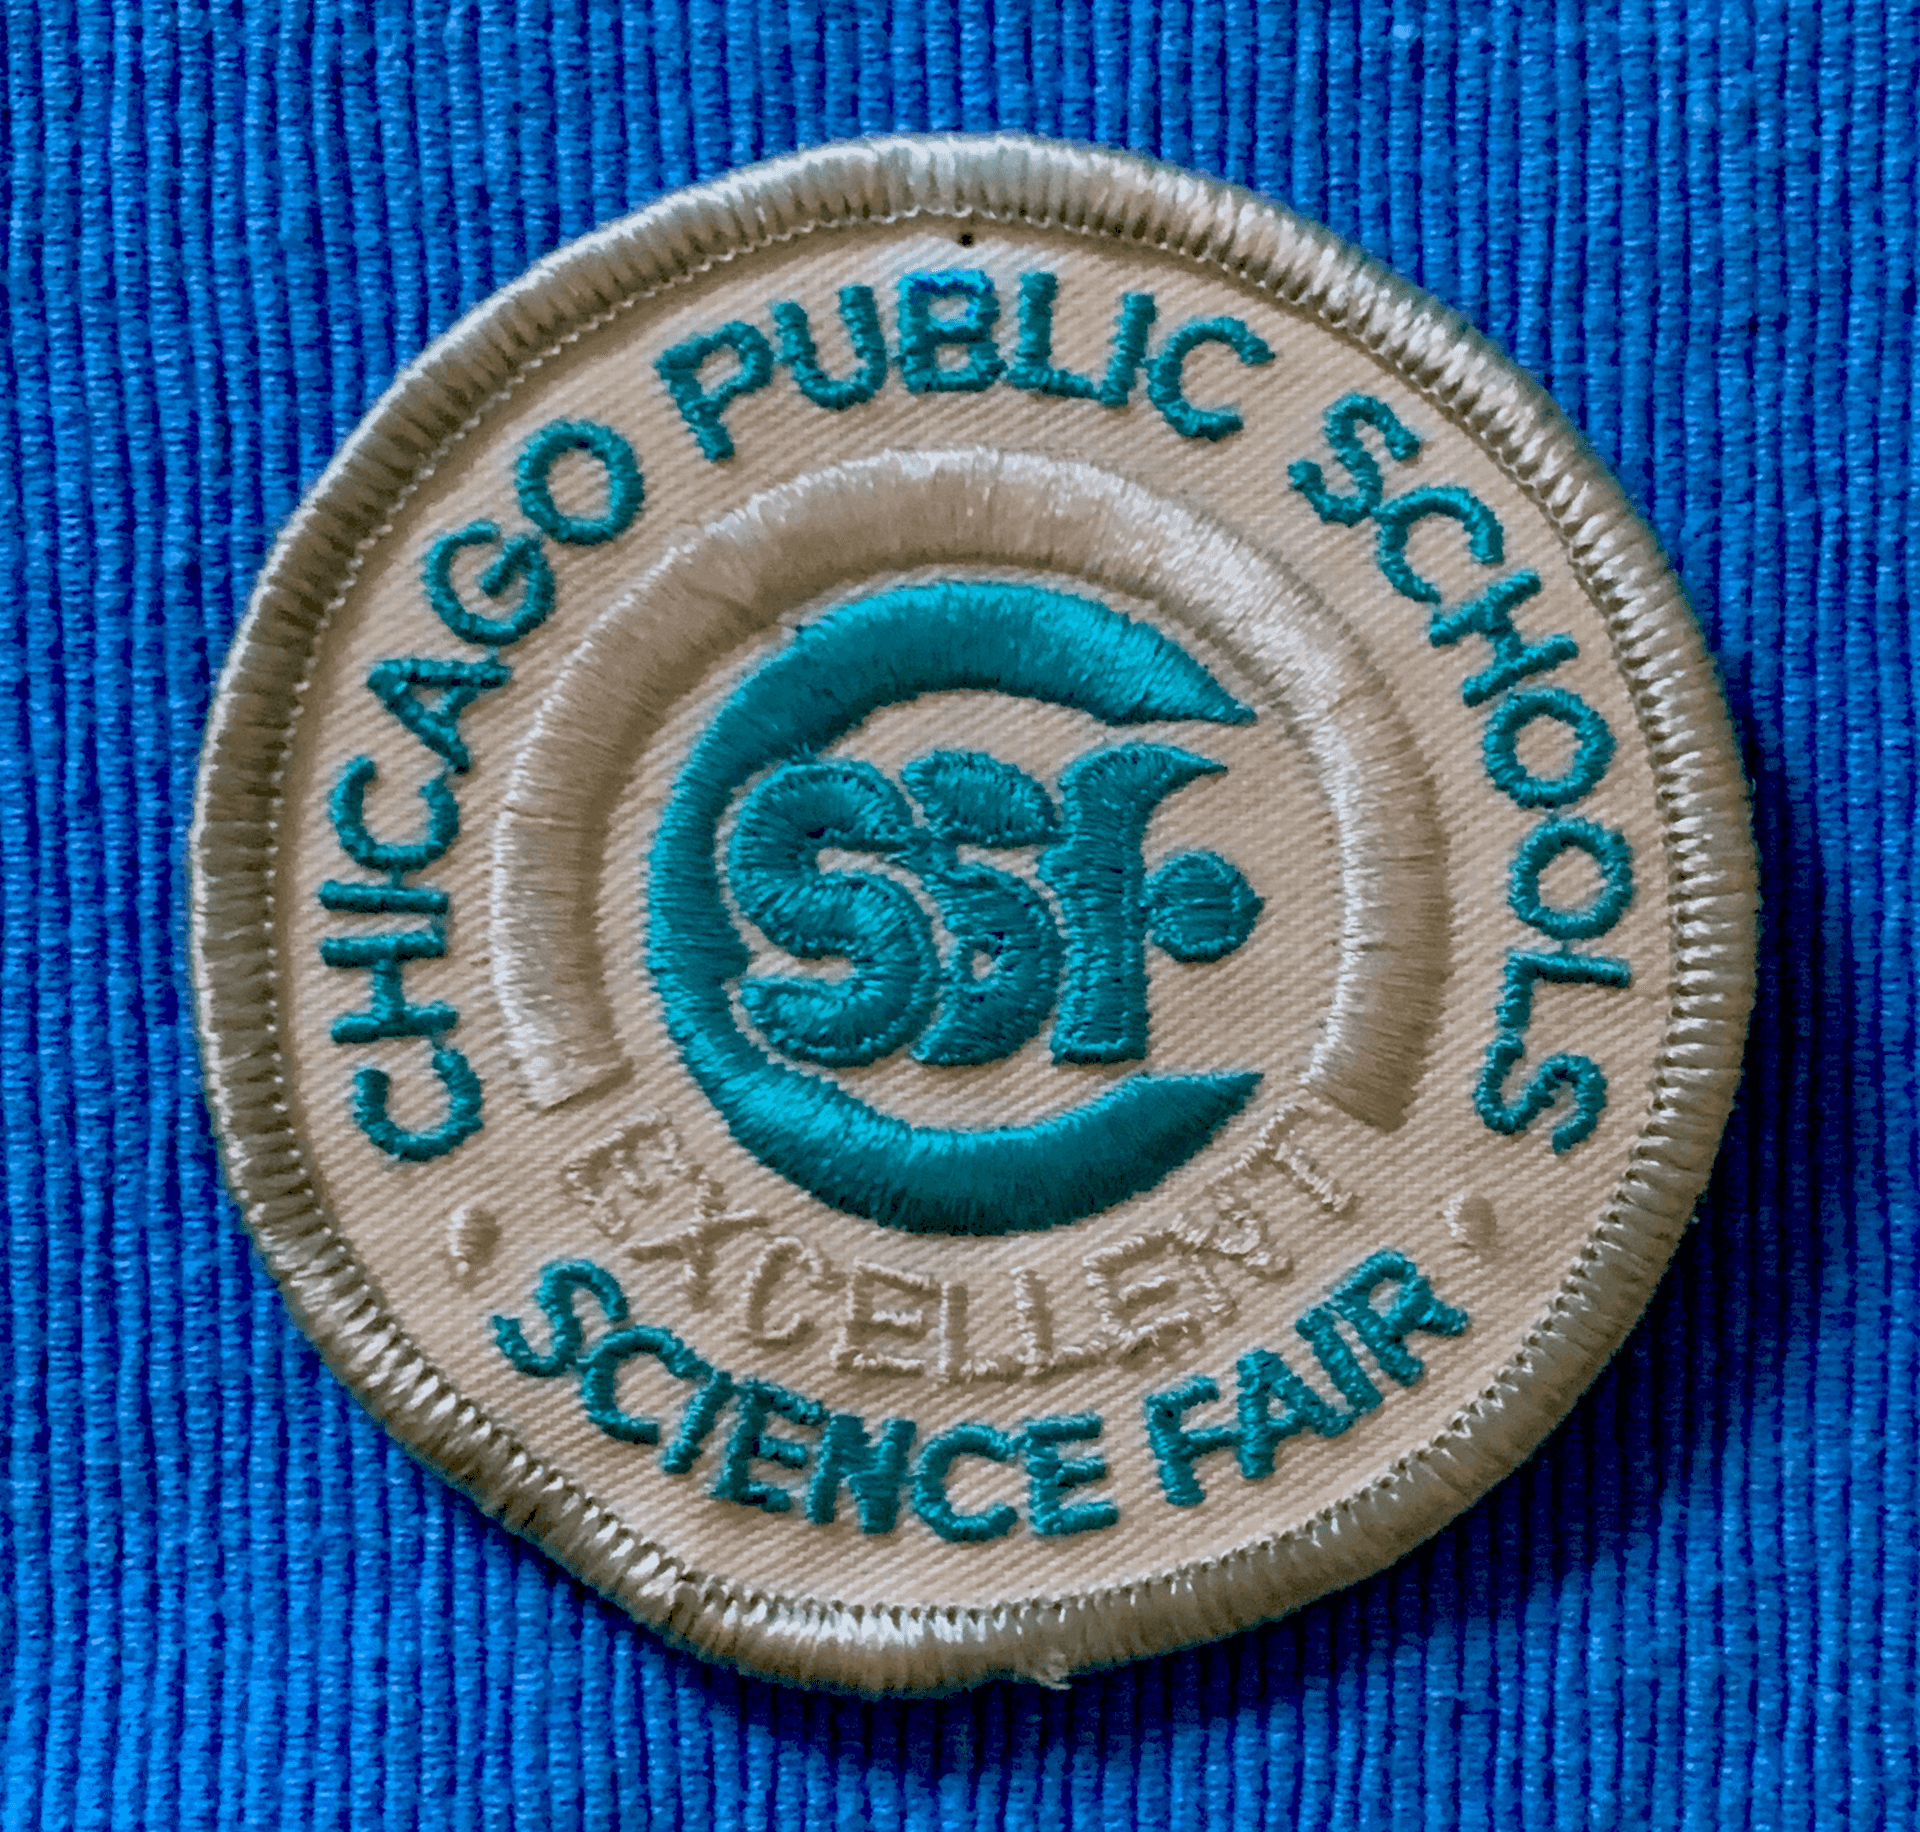 City Science Fair award